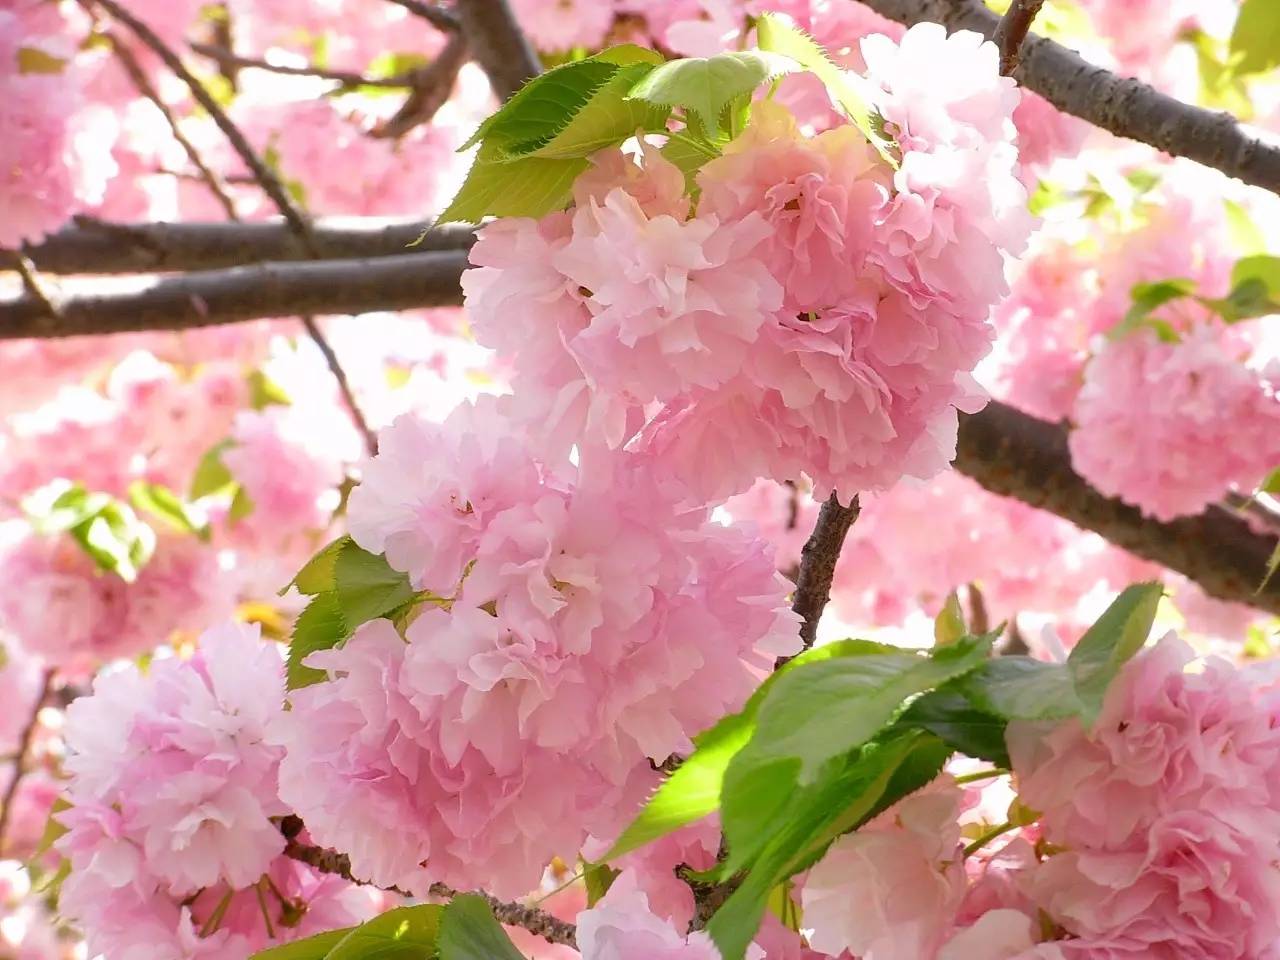 哪里的樱花最美?|日本全境20大赏樱名所指南!